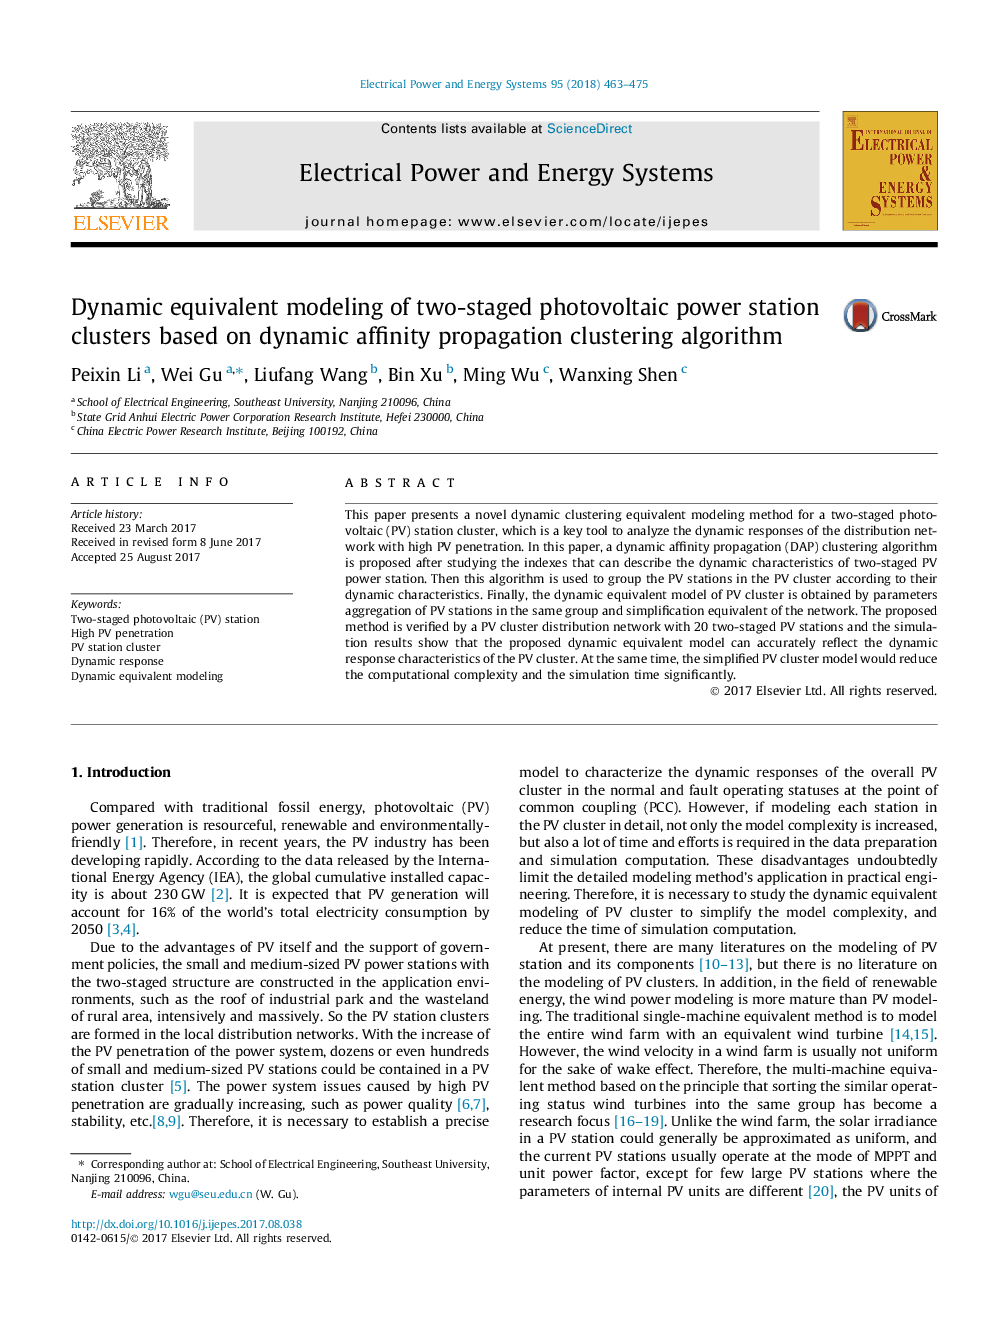 مدل سازی معکوس پویا از خوشه های ایستگاه فتوولتائیک دو مرحله ای بر اساس الگوریتم خوشه بندی انتشار پویایی نفوذ